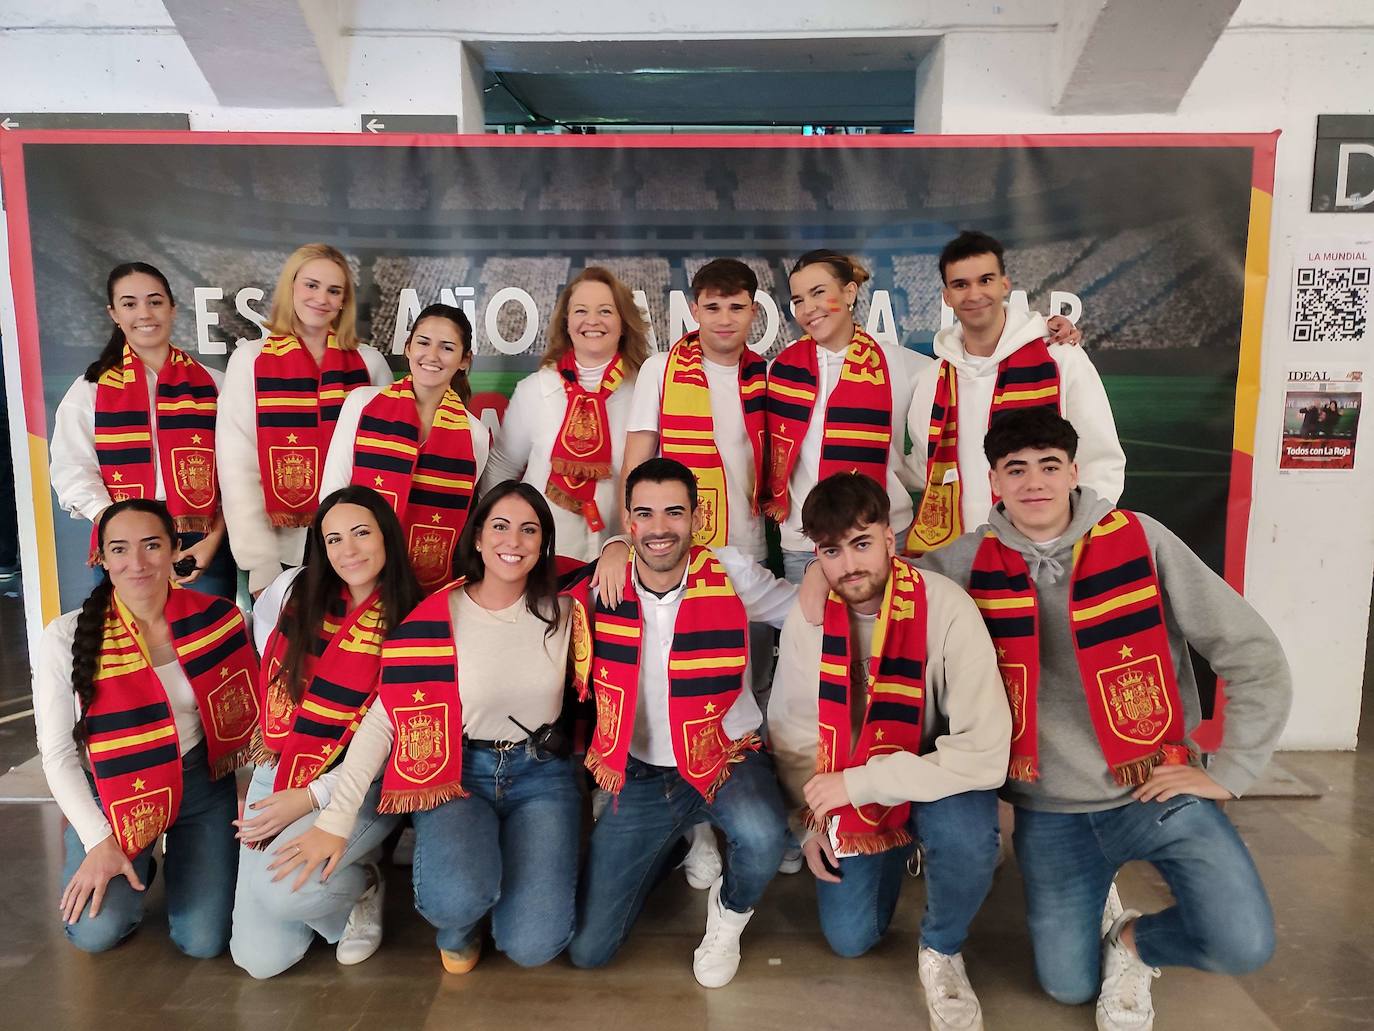 Photocall en el Palacio de los Deportes para el primer partido de España en el Mundial